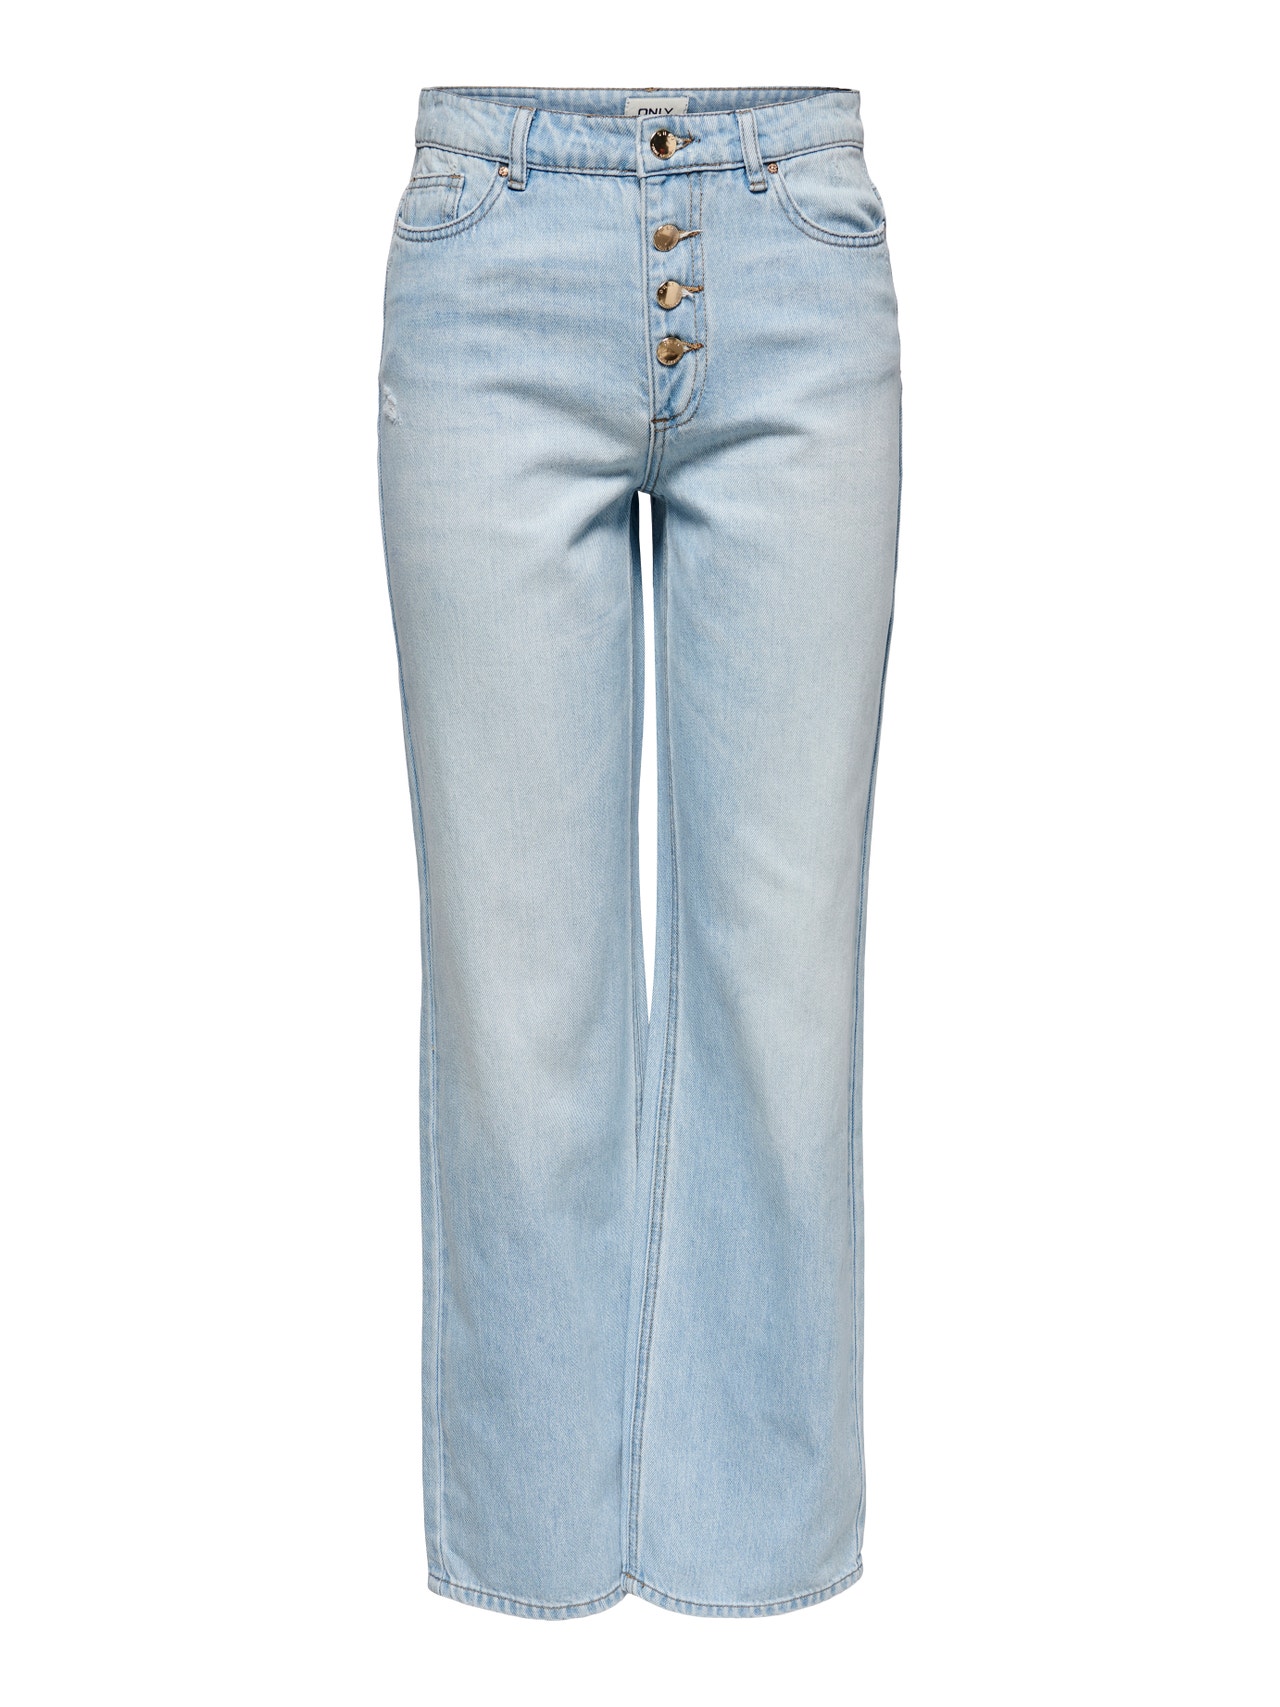 ONLY ONLMolly wide high-waist jeans -Light Blue Denim - 15226069